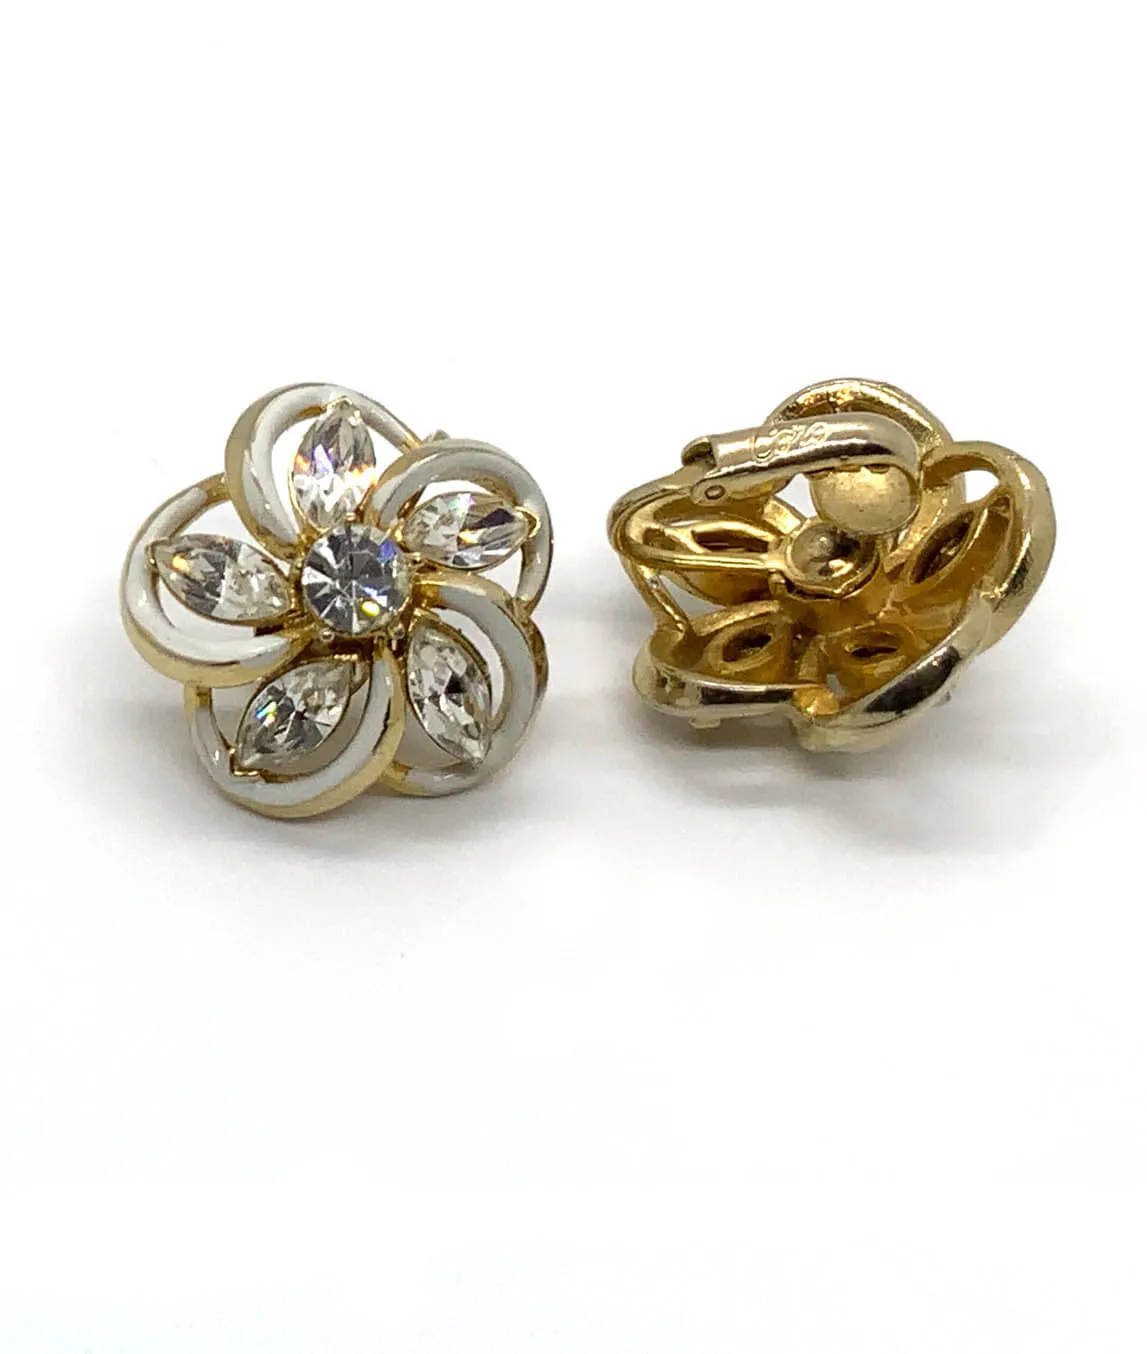 White enamel rhinestone flower earrings by Coro